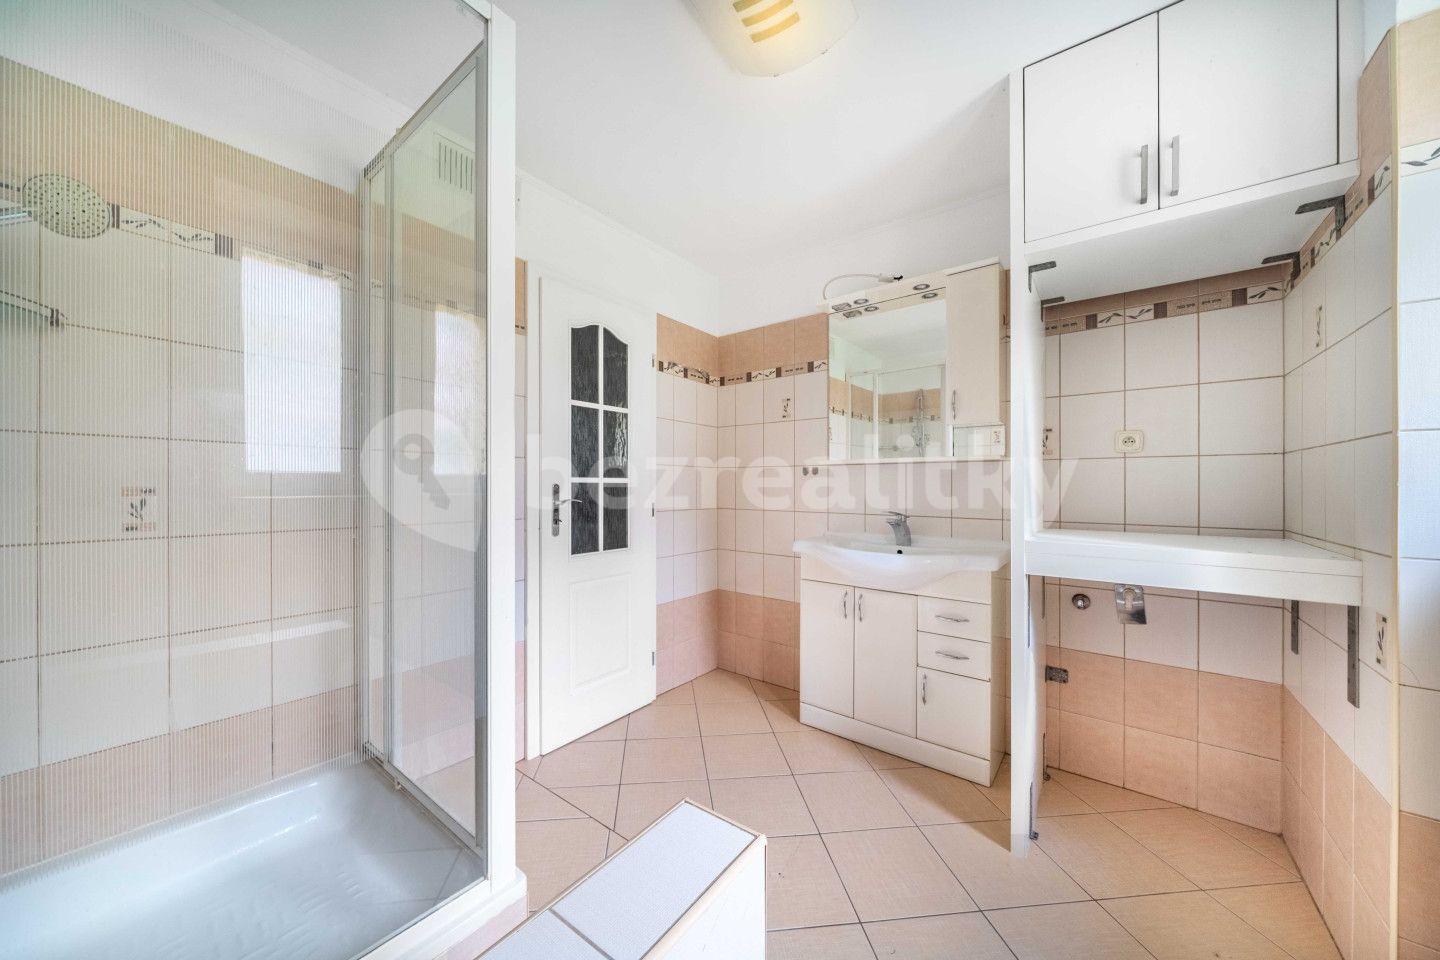 2 bedroom with open-plan kitchen flat for sale, 53 m², V Lipkách, Mníšek pod Brdy, Středočeský Region